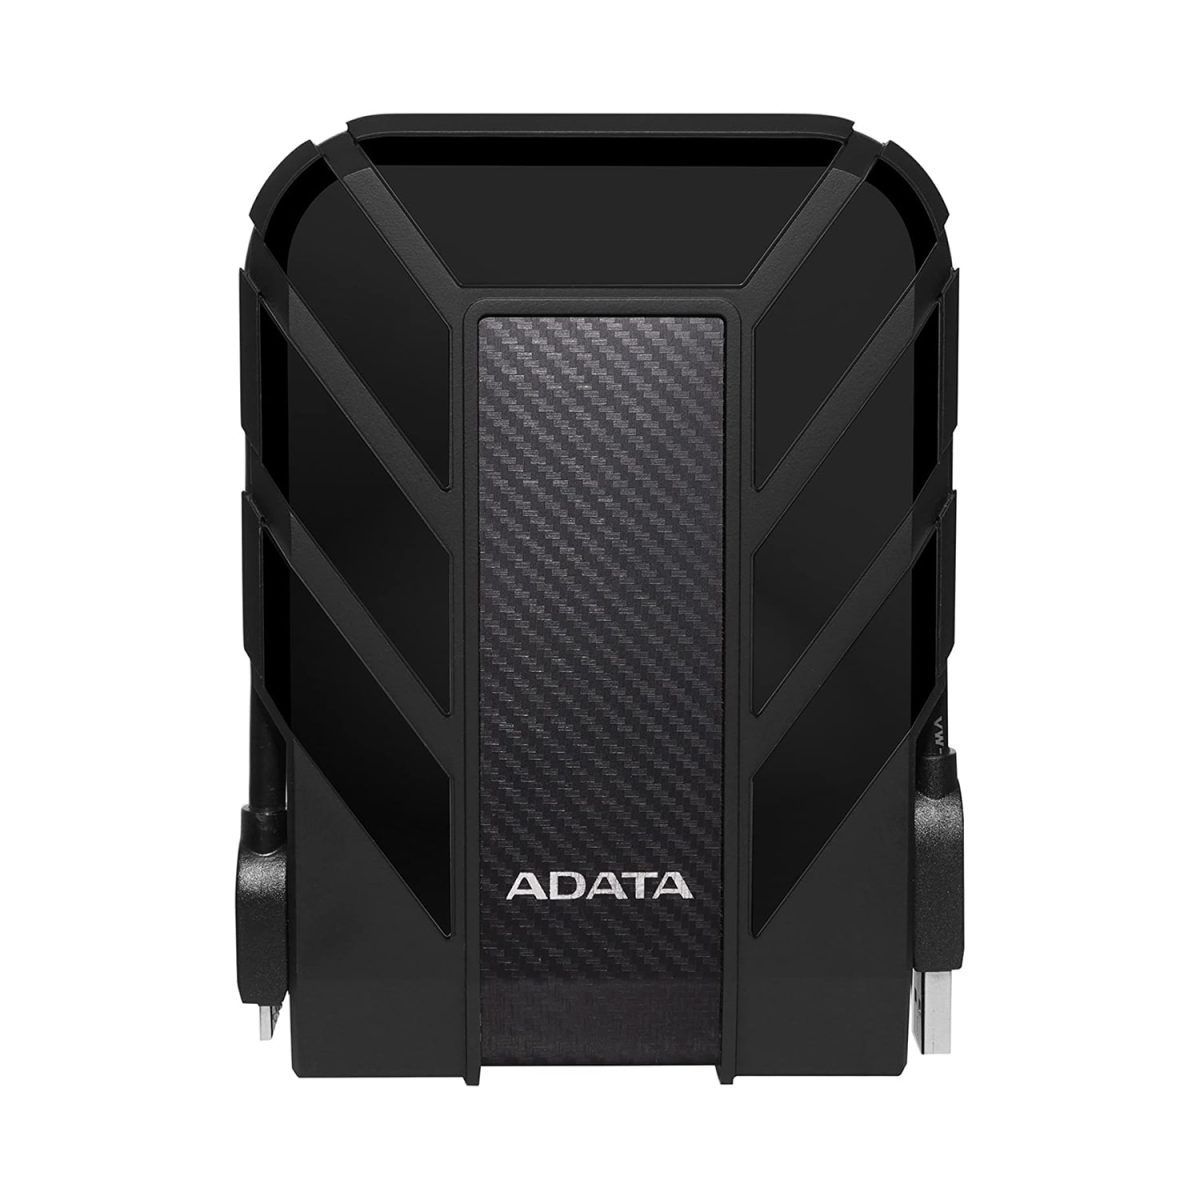 ADATA HD710 Pro External Hard Drive 5TB